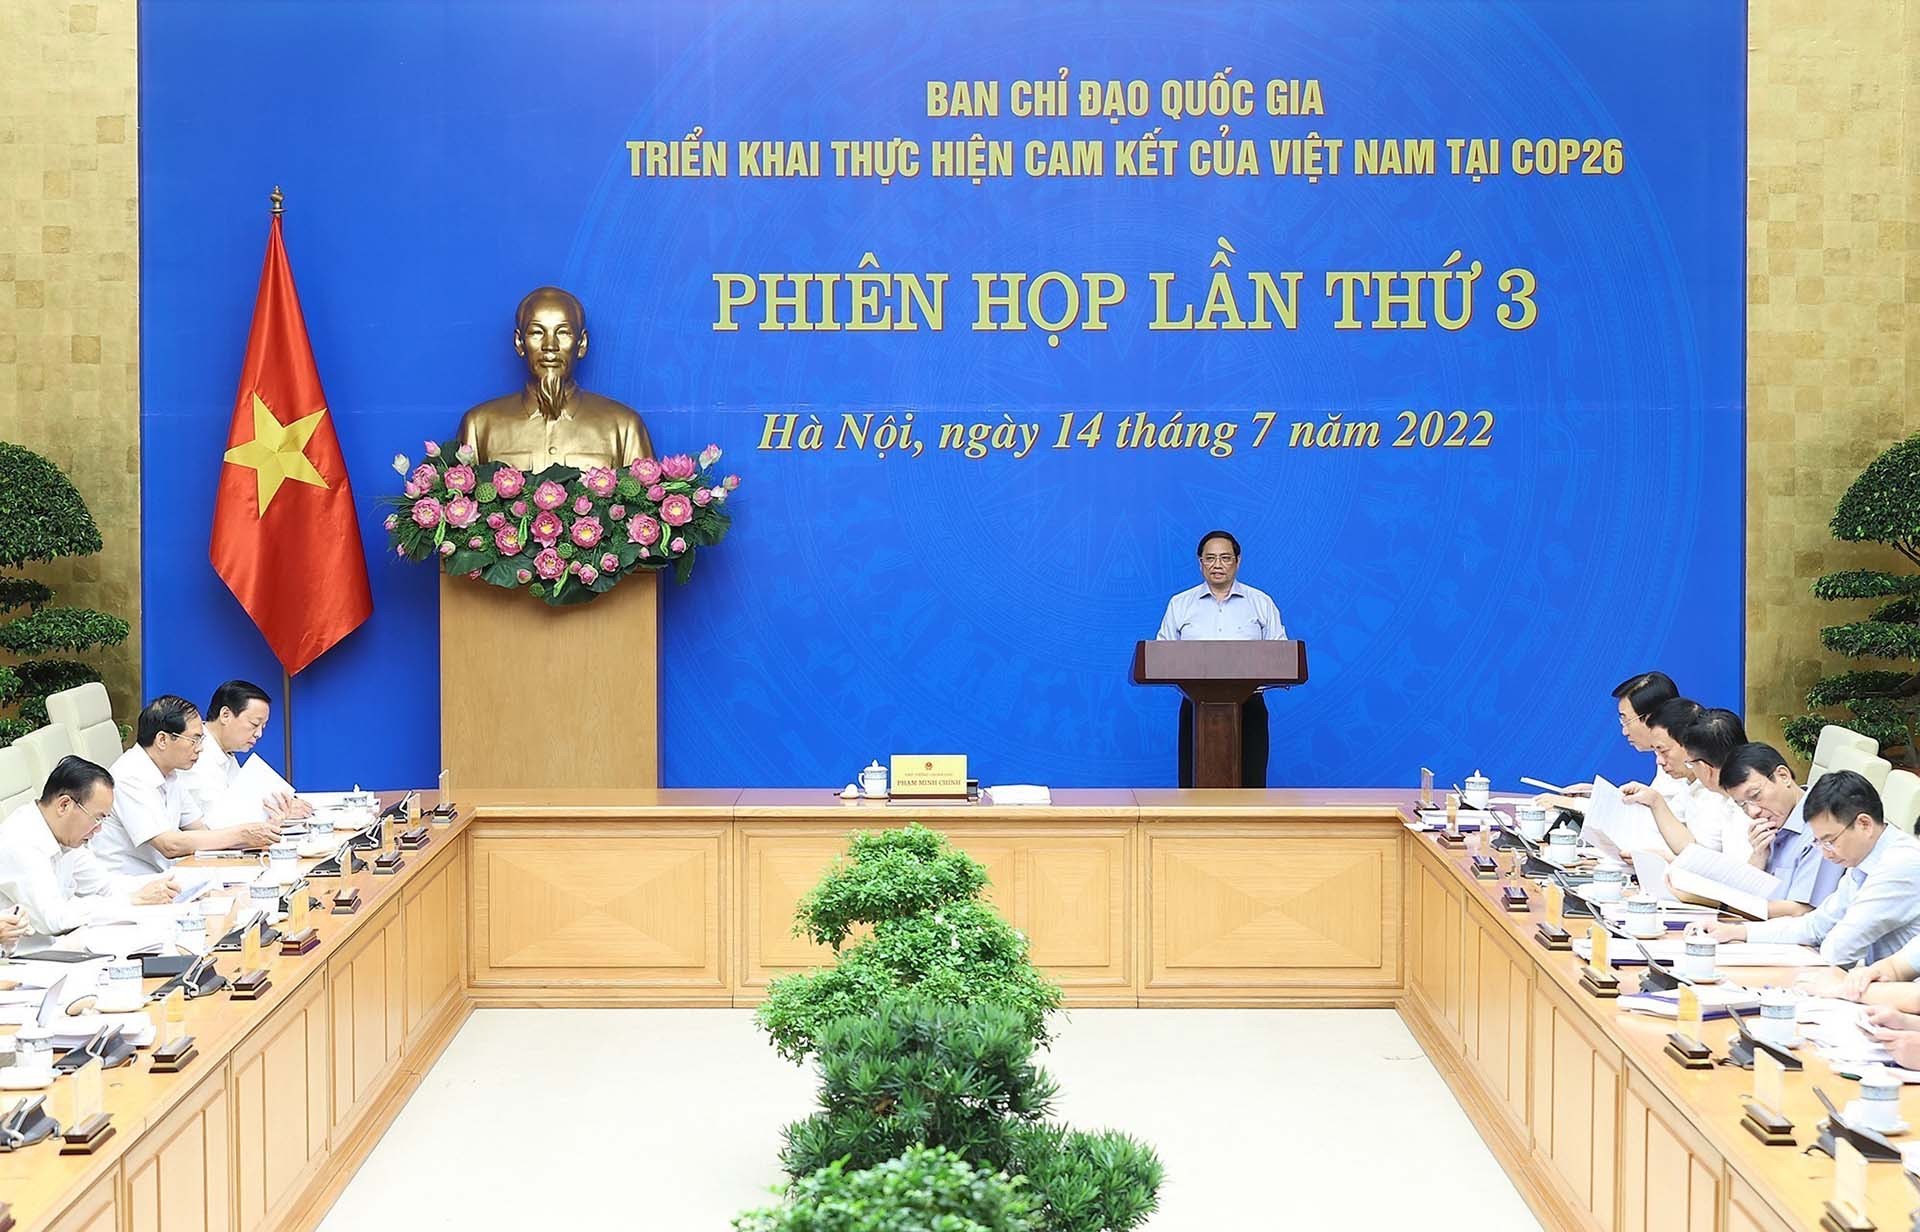 Thủ tướng Phạm Minh Chính chủ trì Phiên họp lần thứ 3 Ban Chỉ đạo Quốc gia triển khai thực hiện cam kết của Việt Nam tại COP26. (Nguồn: TTXVN)